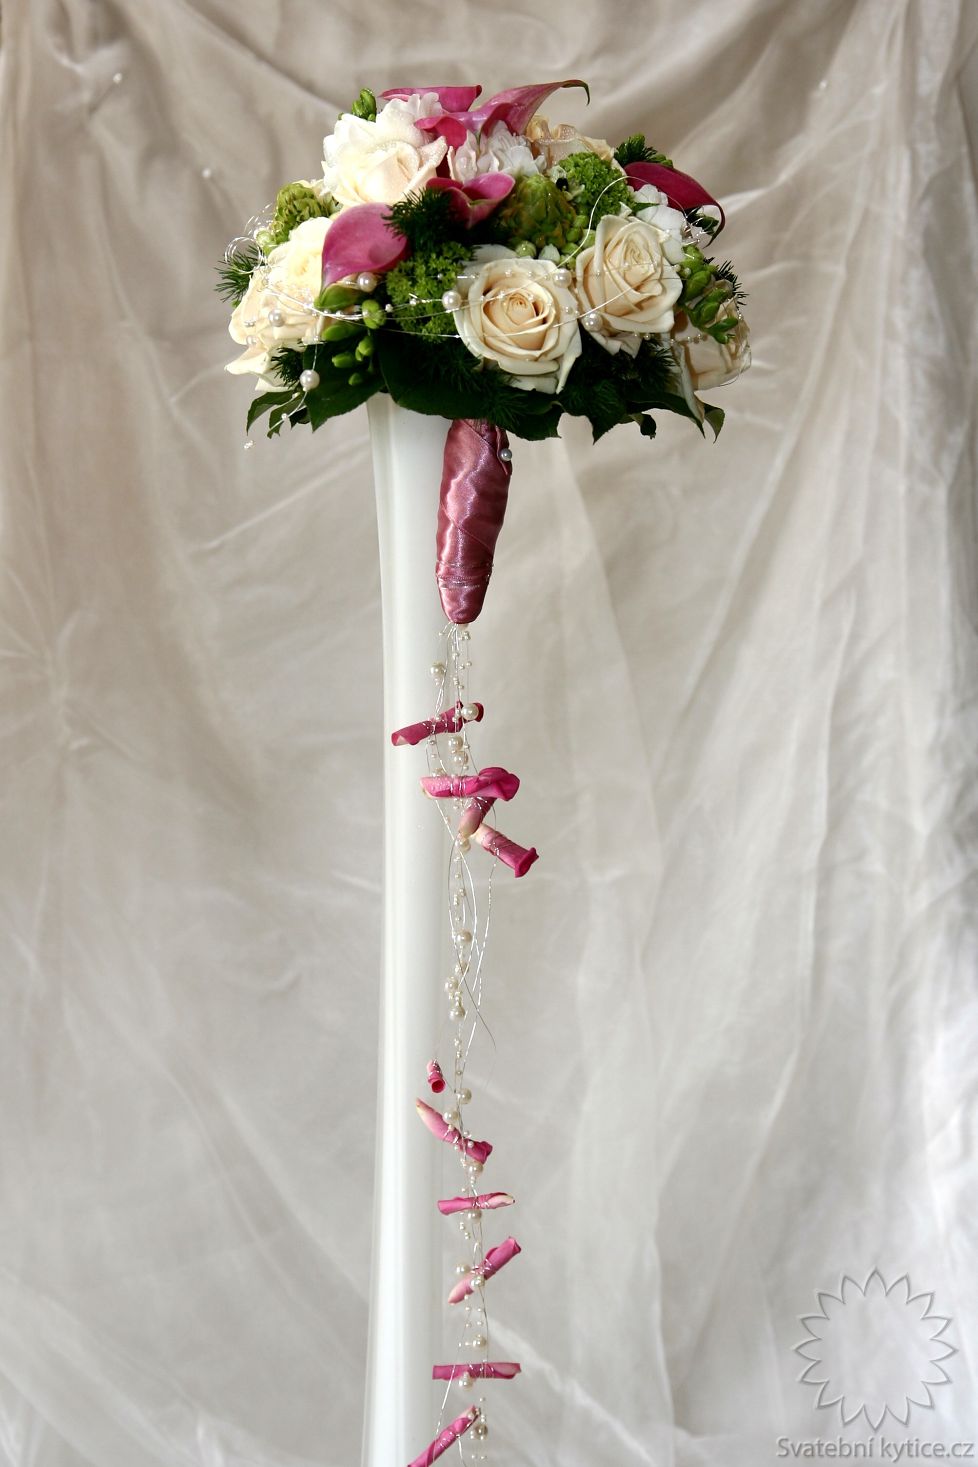 Svatební kytice